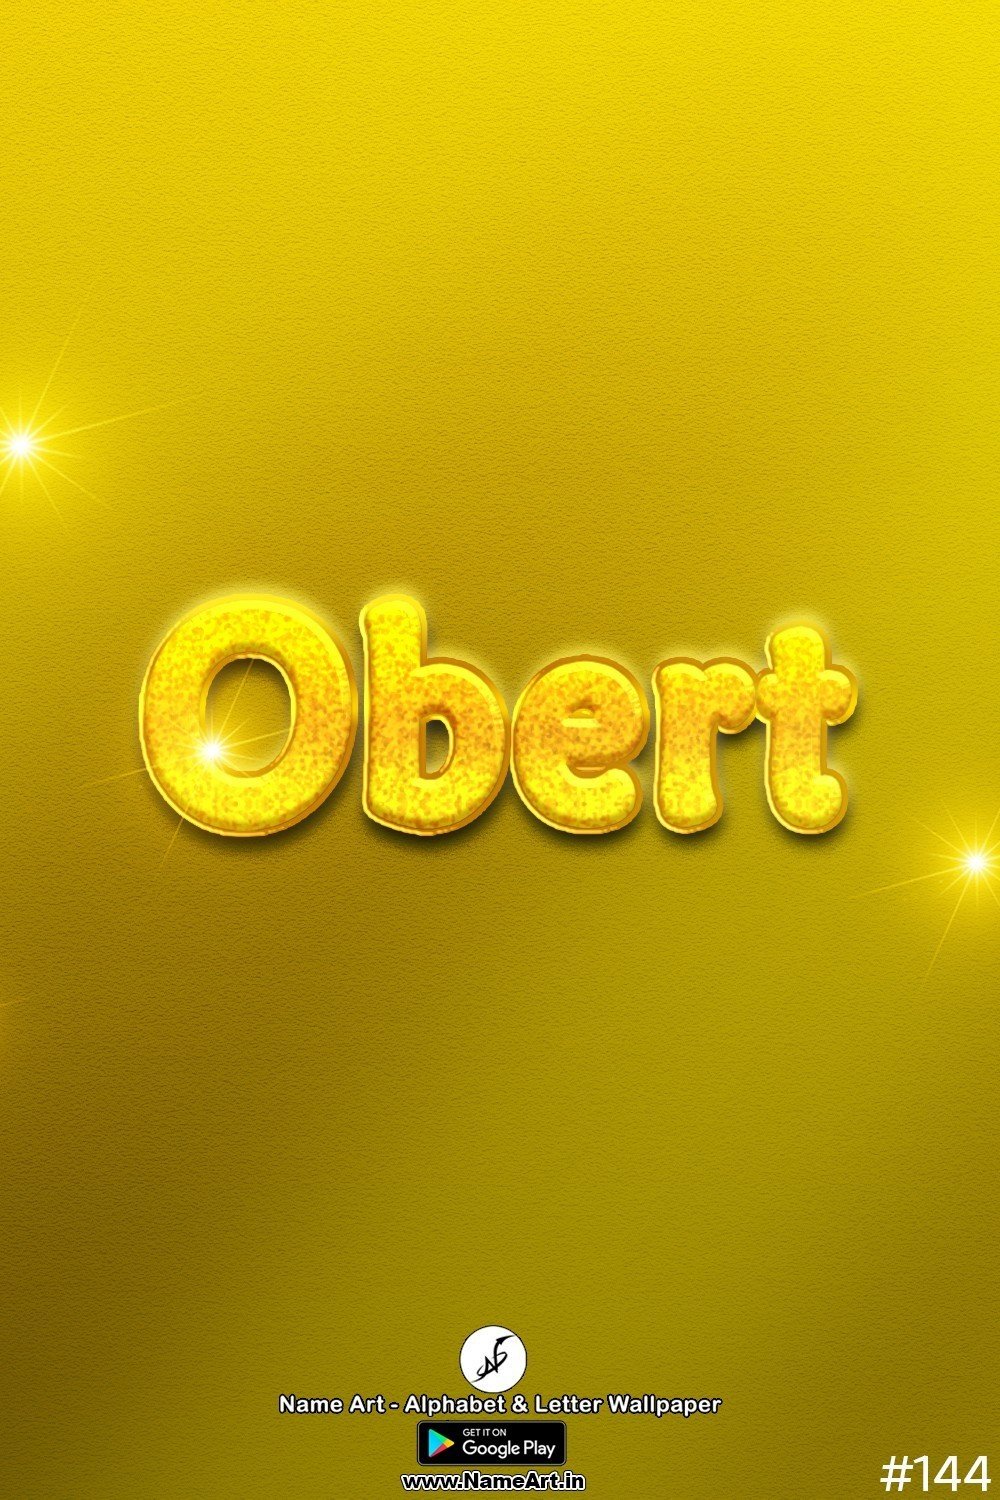 Obert | Whatsapp Status Obert | Happy Birthday Obert !! | New Whatsapp Status Obert Images |